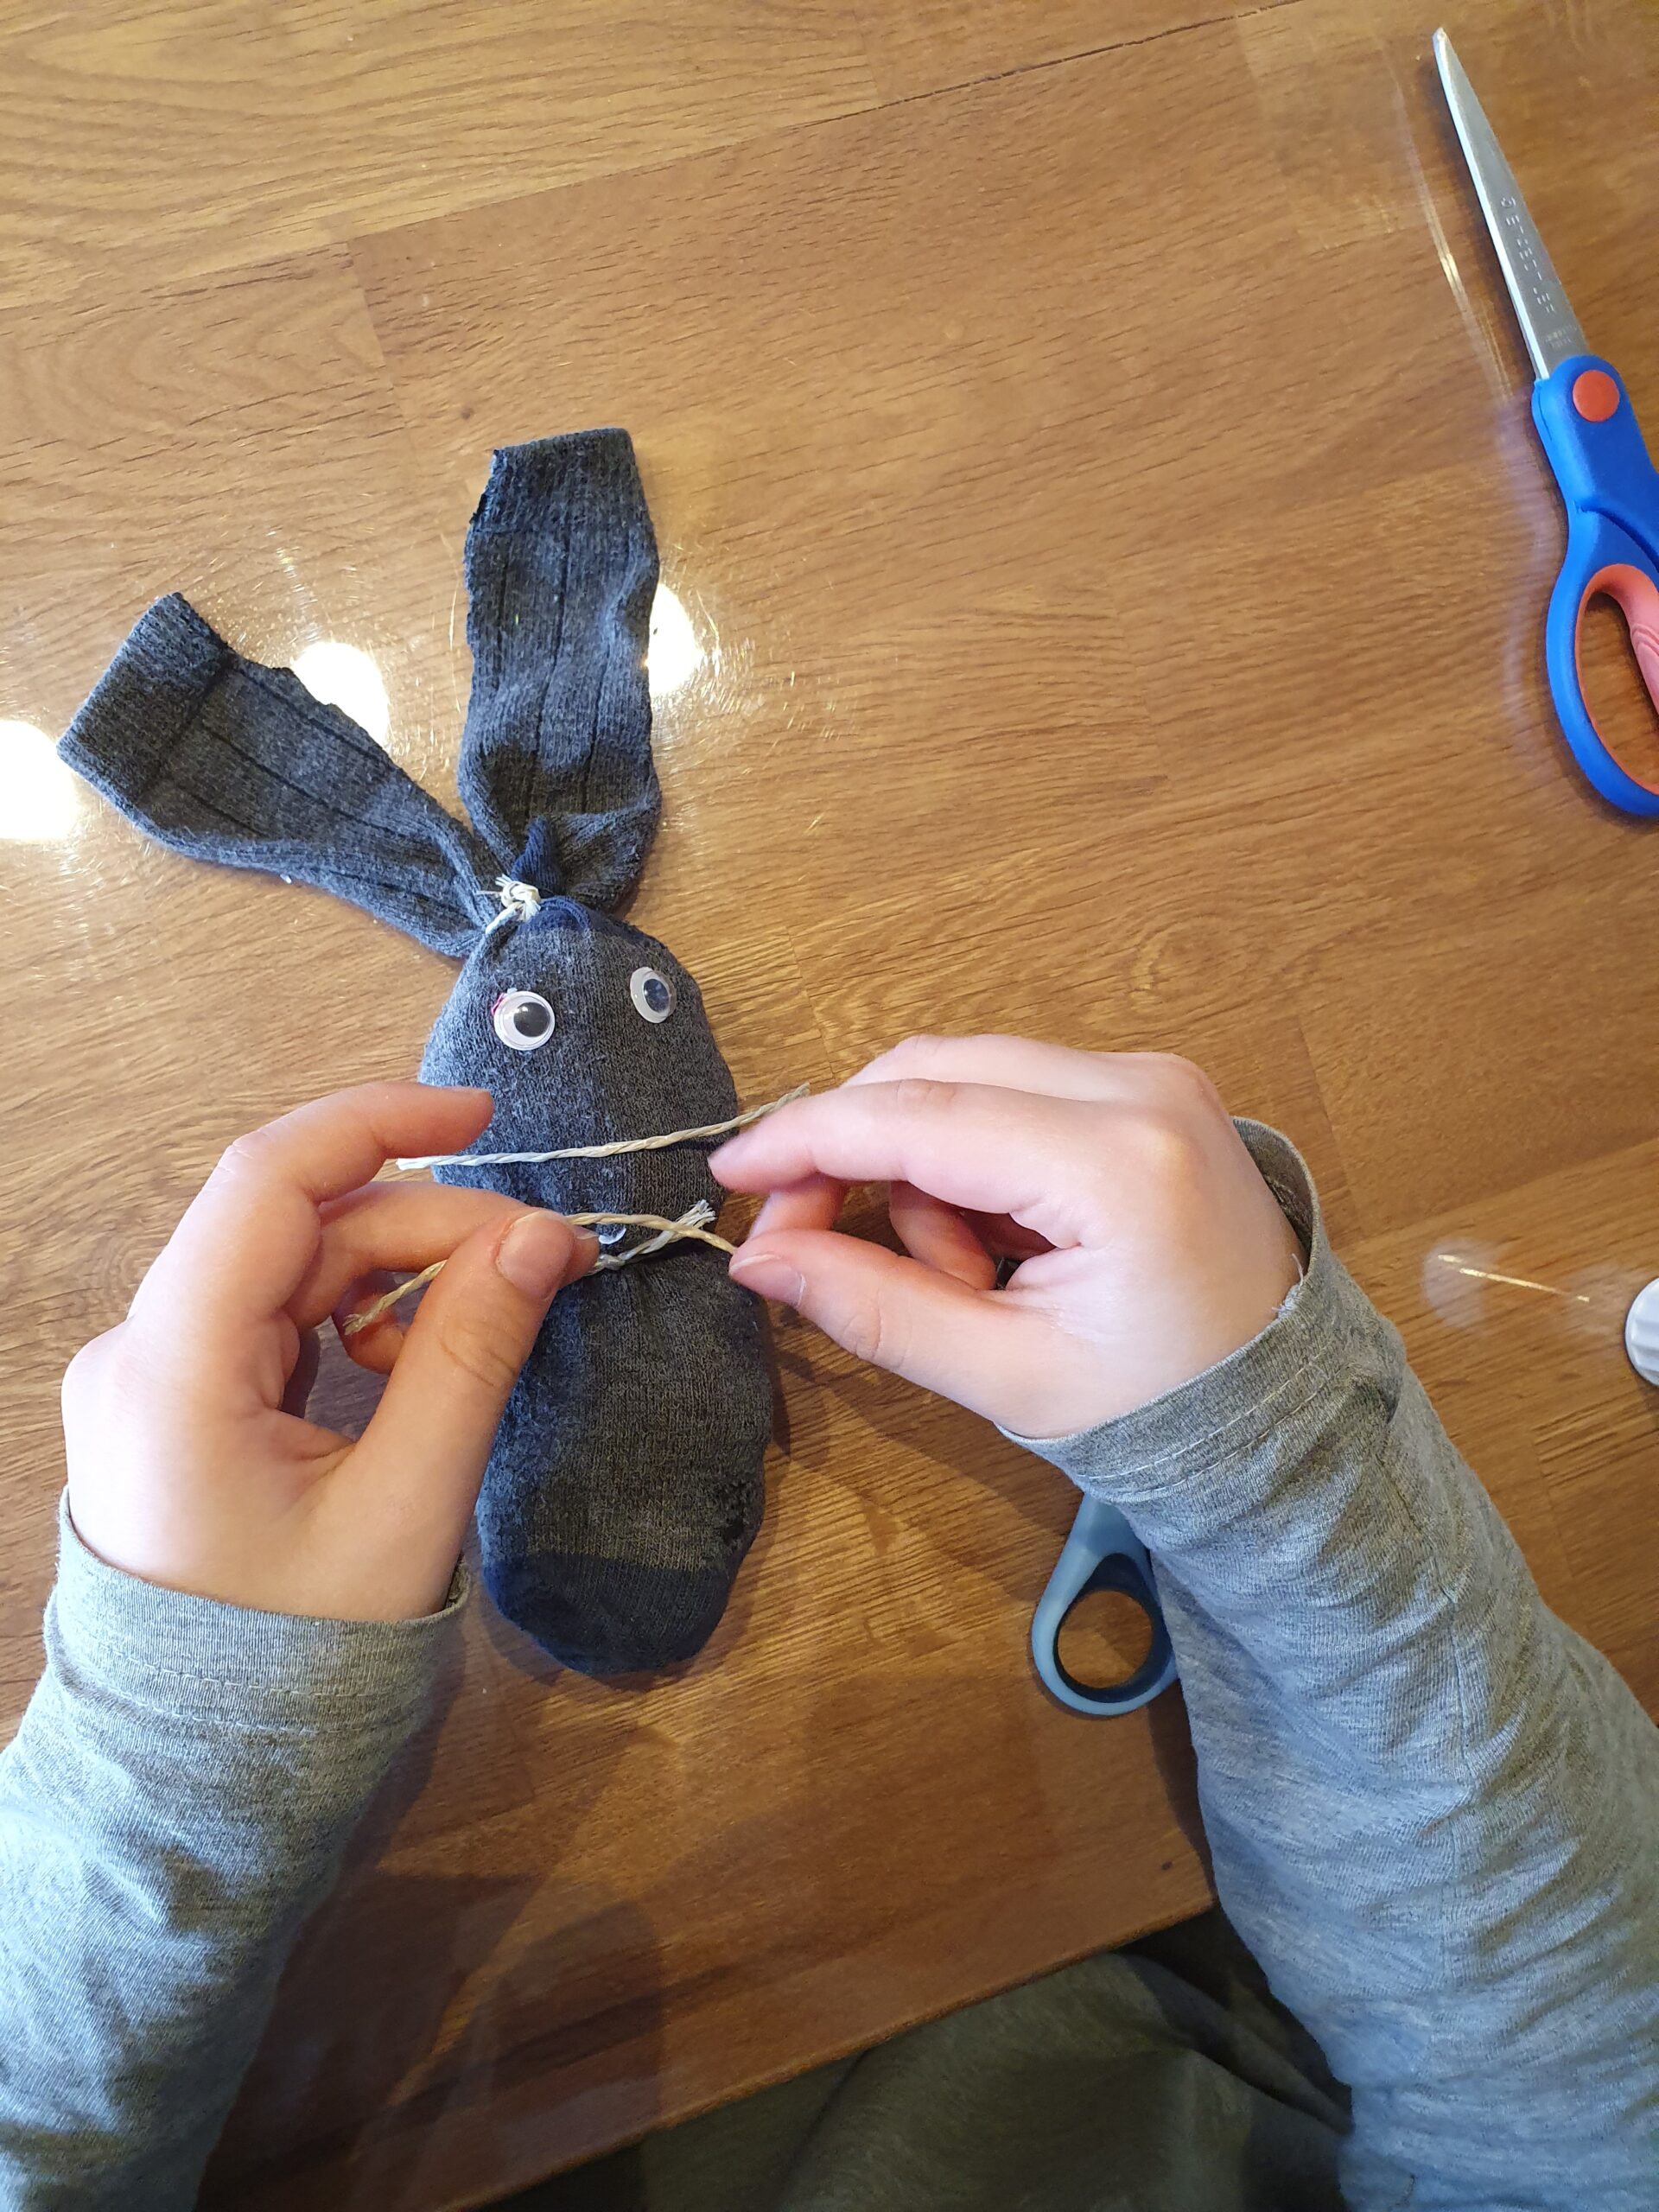 Bild zum Schritt 8 für das Bastel- und DIY-Abenteuer für Kinder: 'Für die Schurrhaare macht ihr einen Klebepunkt auf den Socken...'